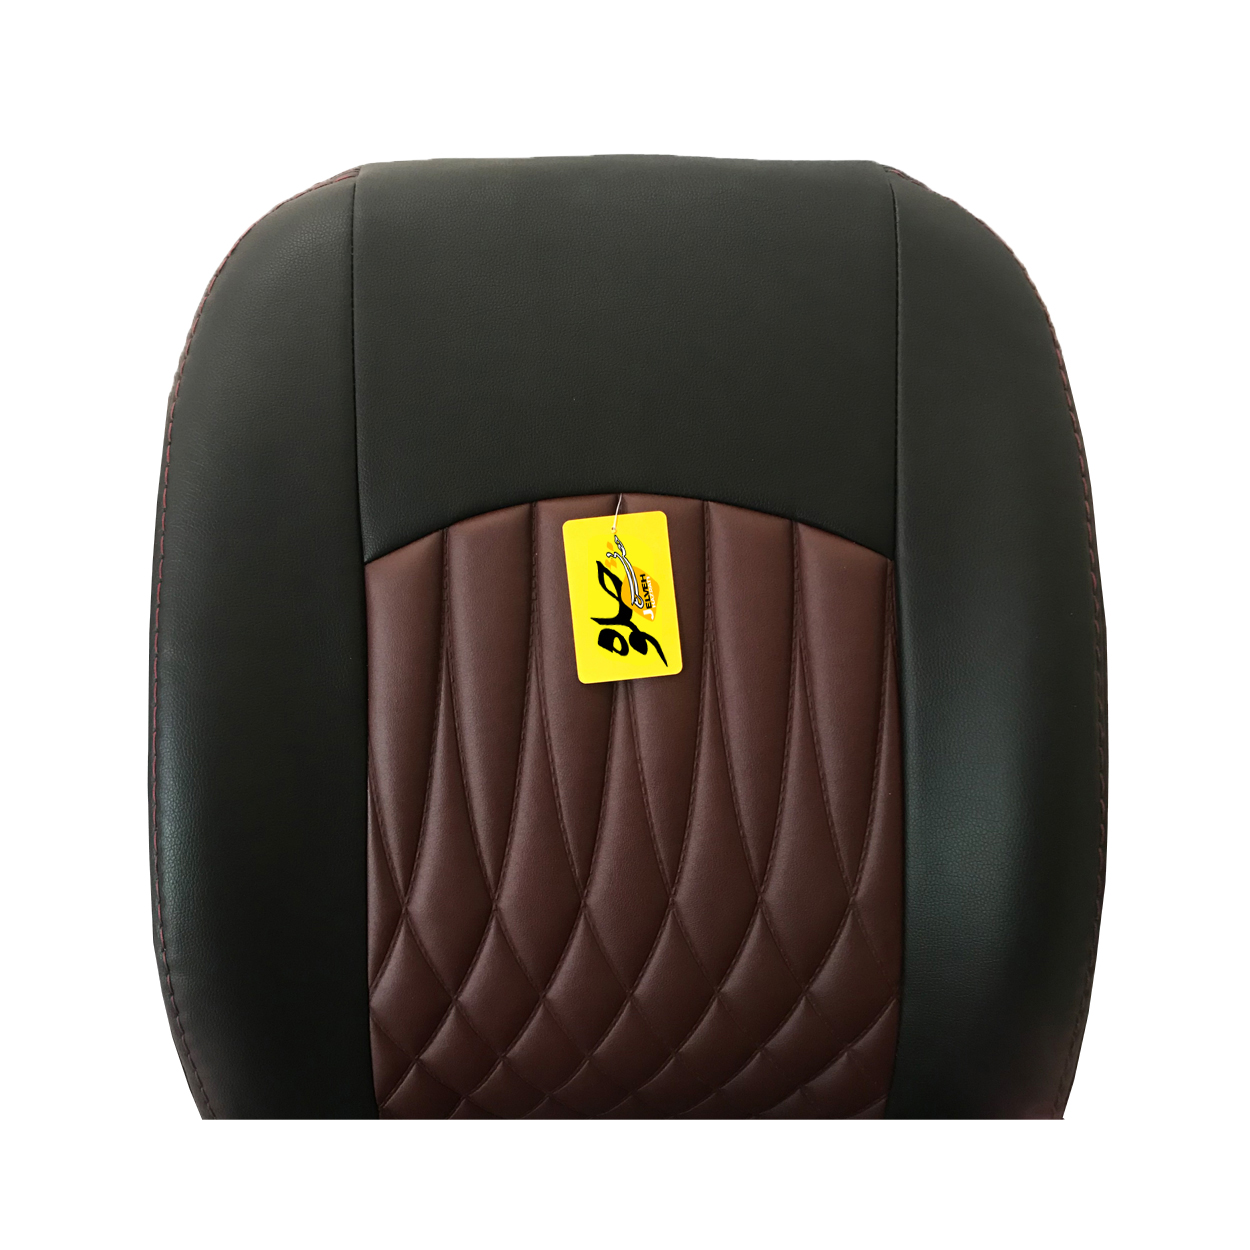 روکش صندلی خودرو جلوه مدل bg14 مناسب برای رانا